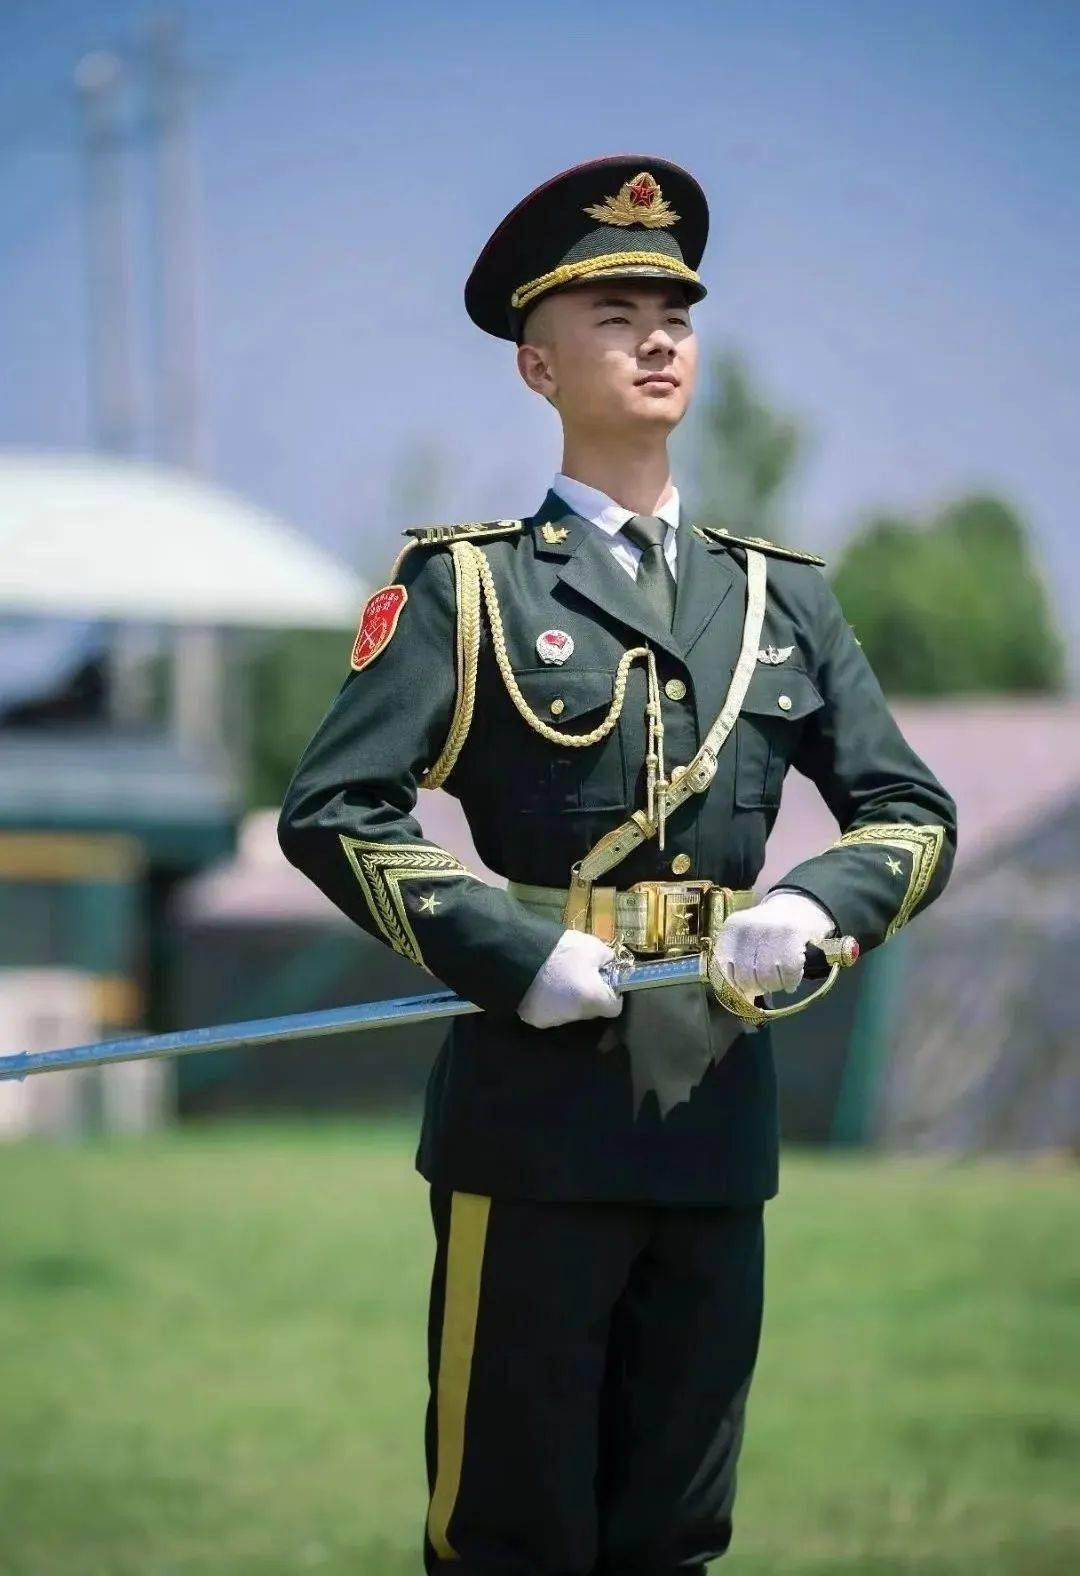 国旗护卫队退役年龄图片